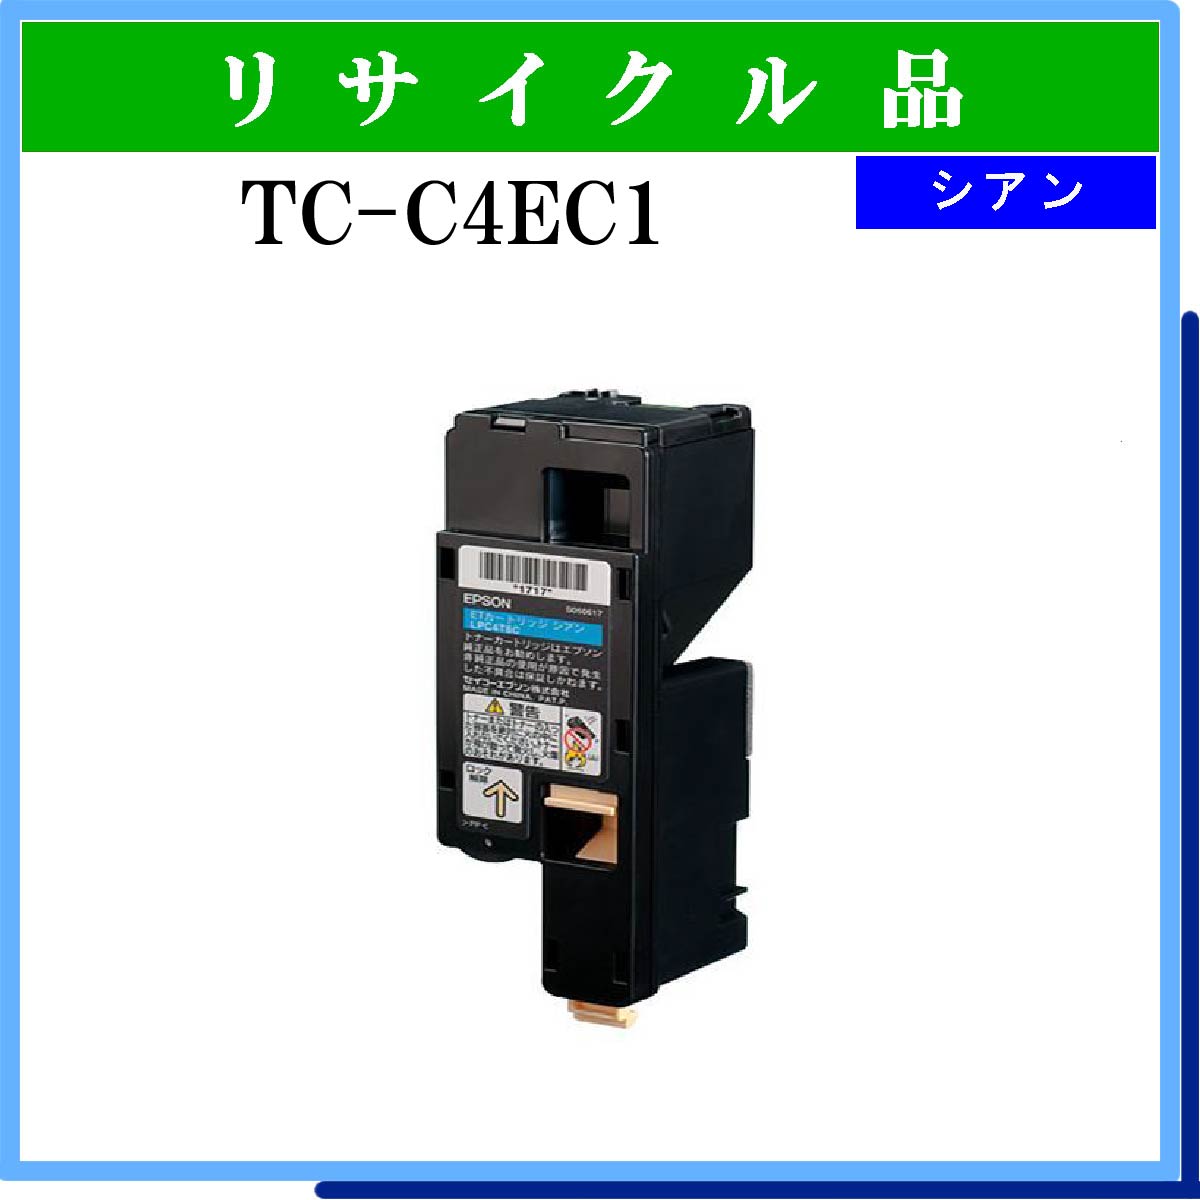 TC-C4EC1